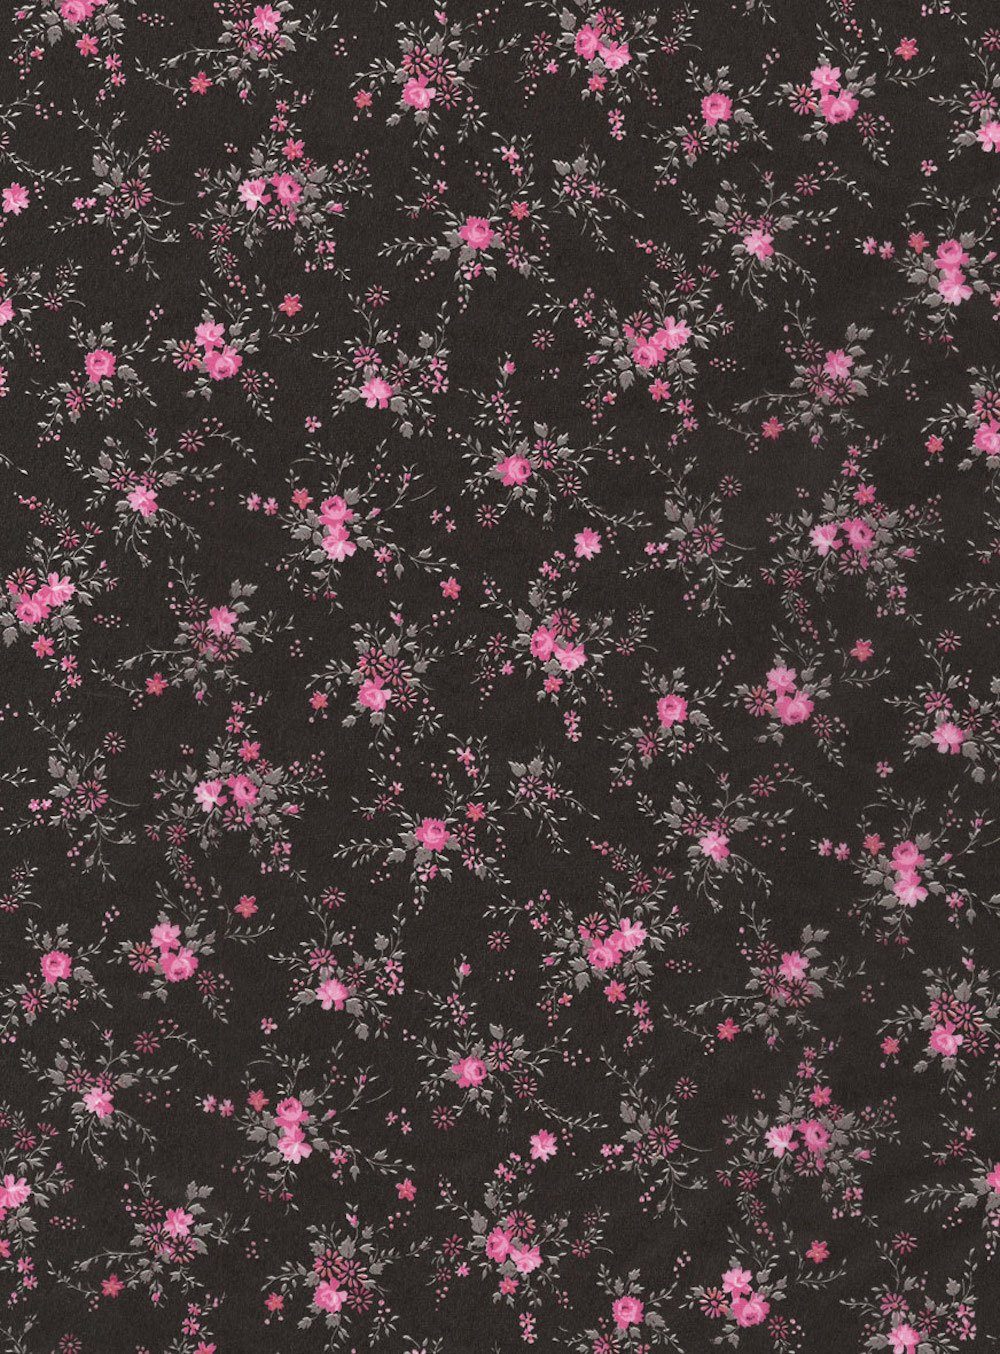 H-Erzmade Zeichenpapier Décopatch-Papier 565 Blumenzweige pink/schwarz, 30